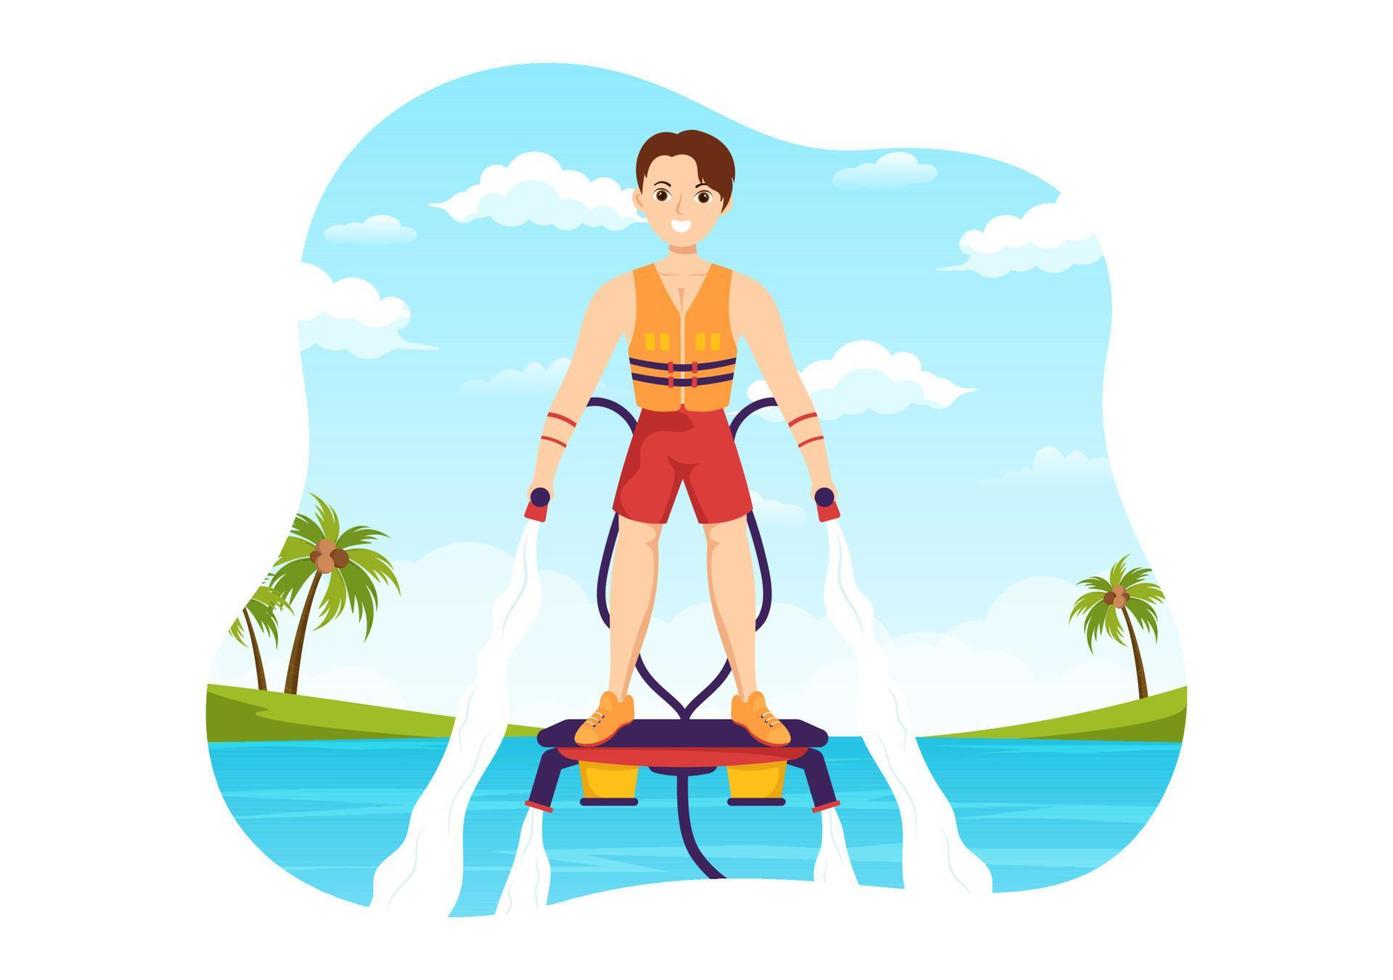 ilustração de flyboard com pessoas andando de jet pack nas férias de verão na praia em modelos desenhados à mão de desenhos animados de atividades extremas planas de esportes aquáticos vetor